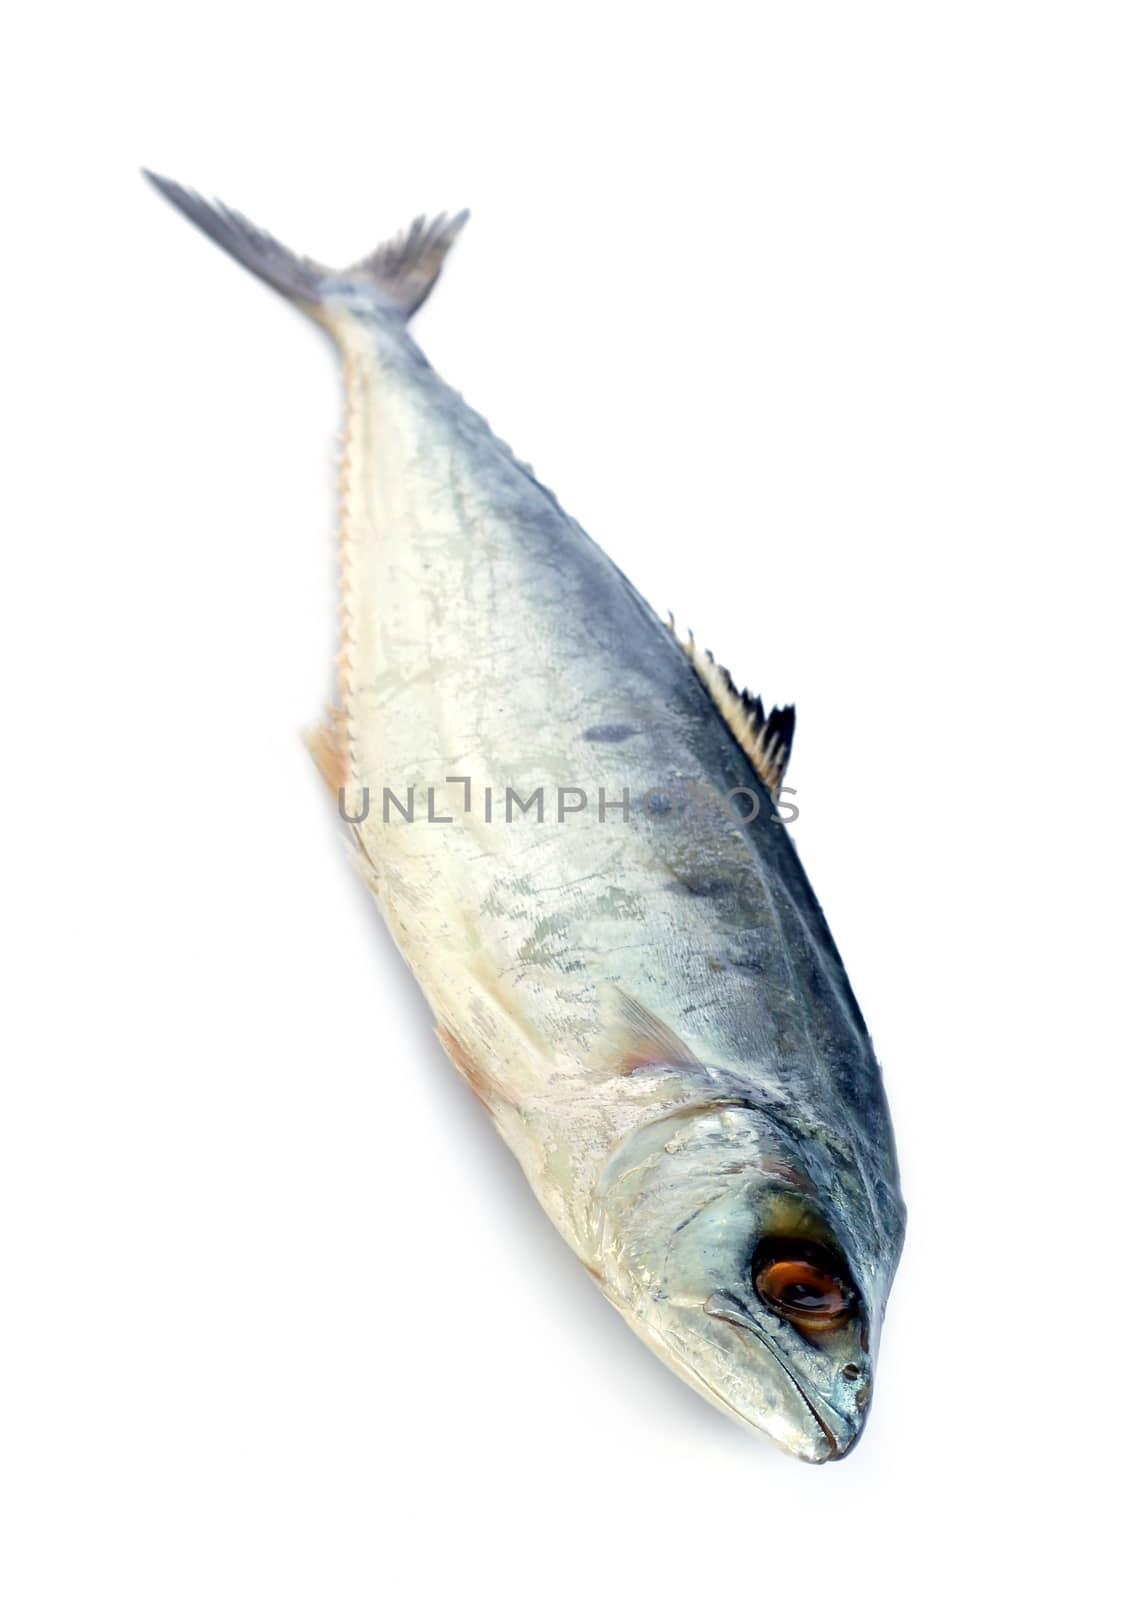 Image of fresh mackerel fish isolated on white background.